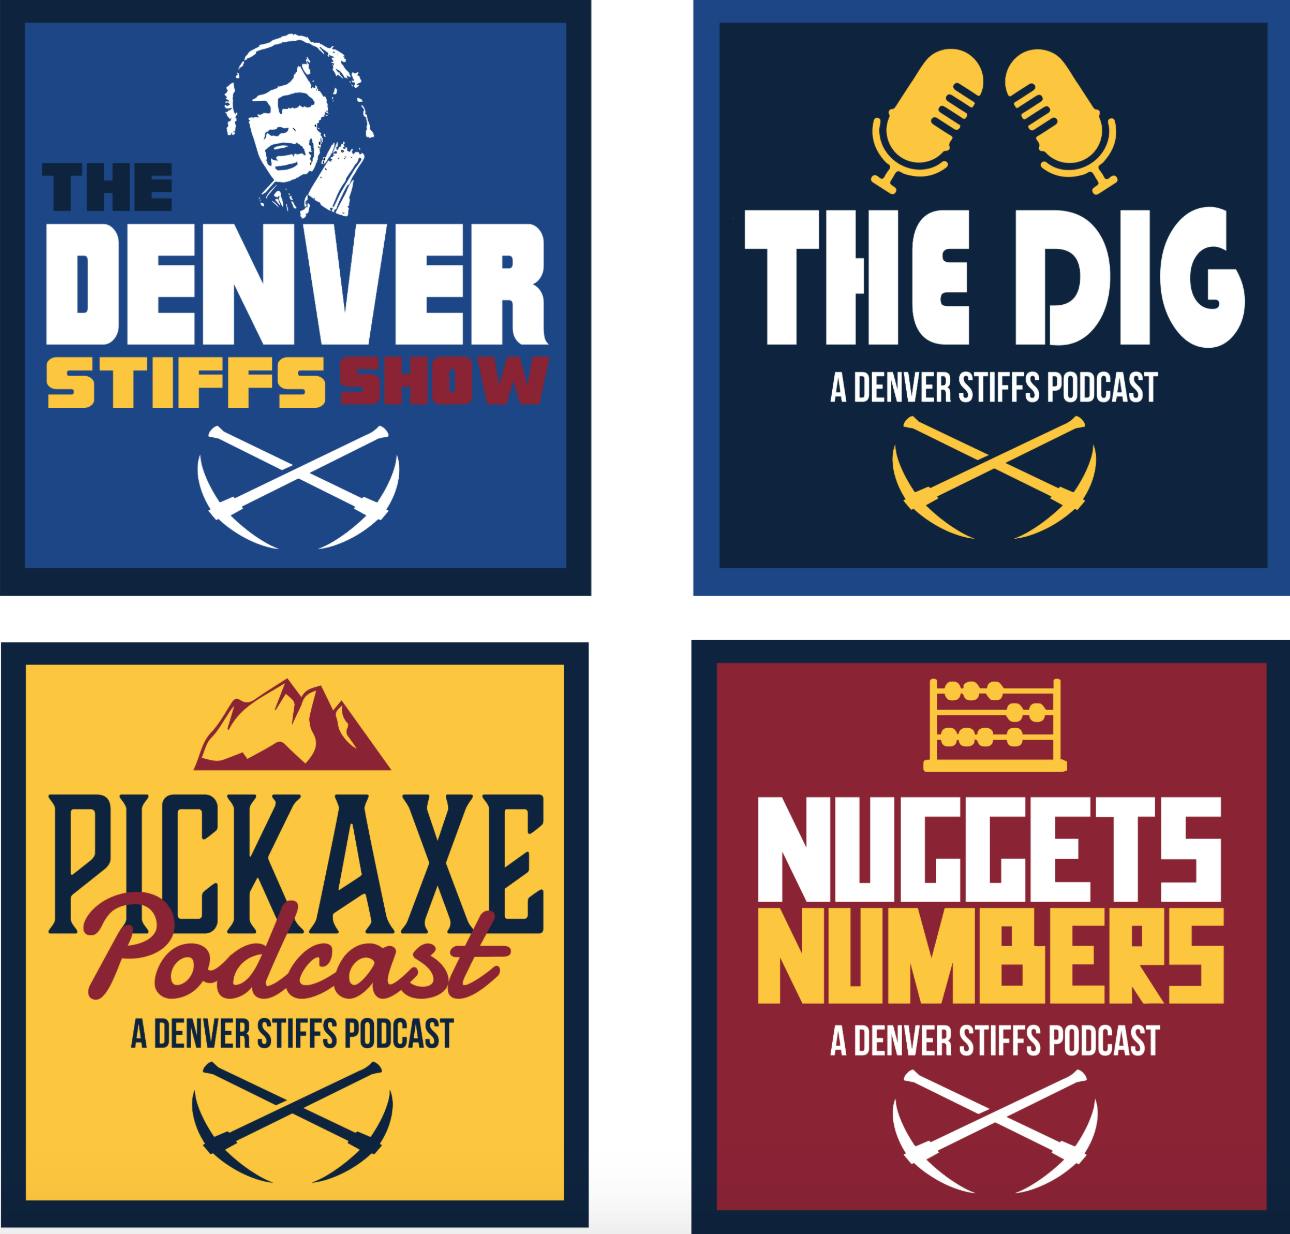 The Denver Stiffs Show - All-Star Break Podcast Summit